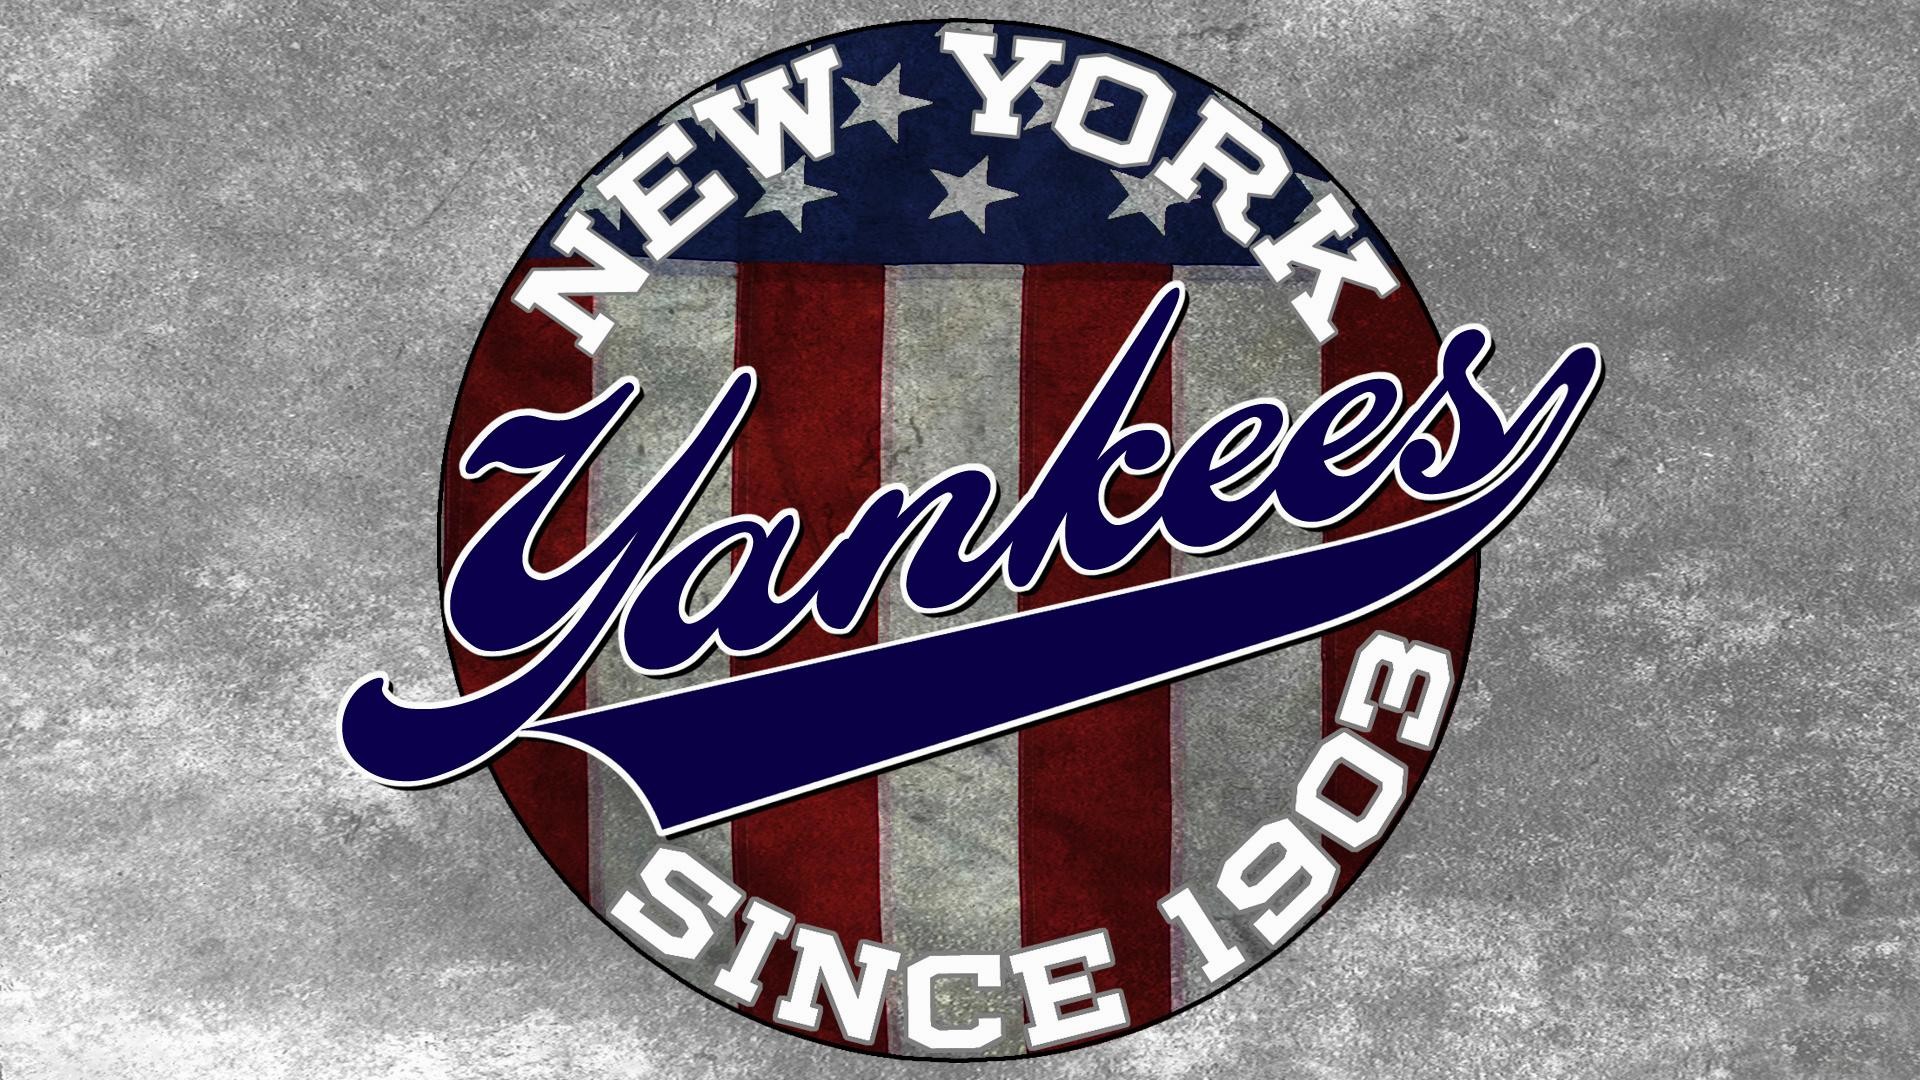 new york yankees logo wallpaper ·① wallpapertag